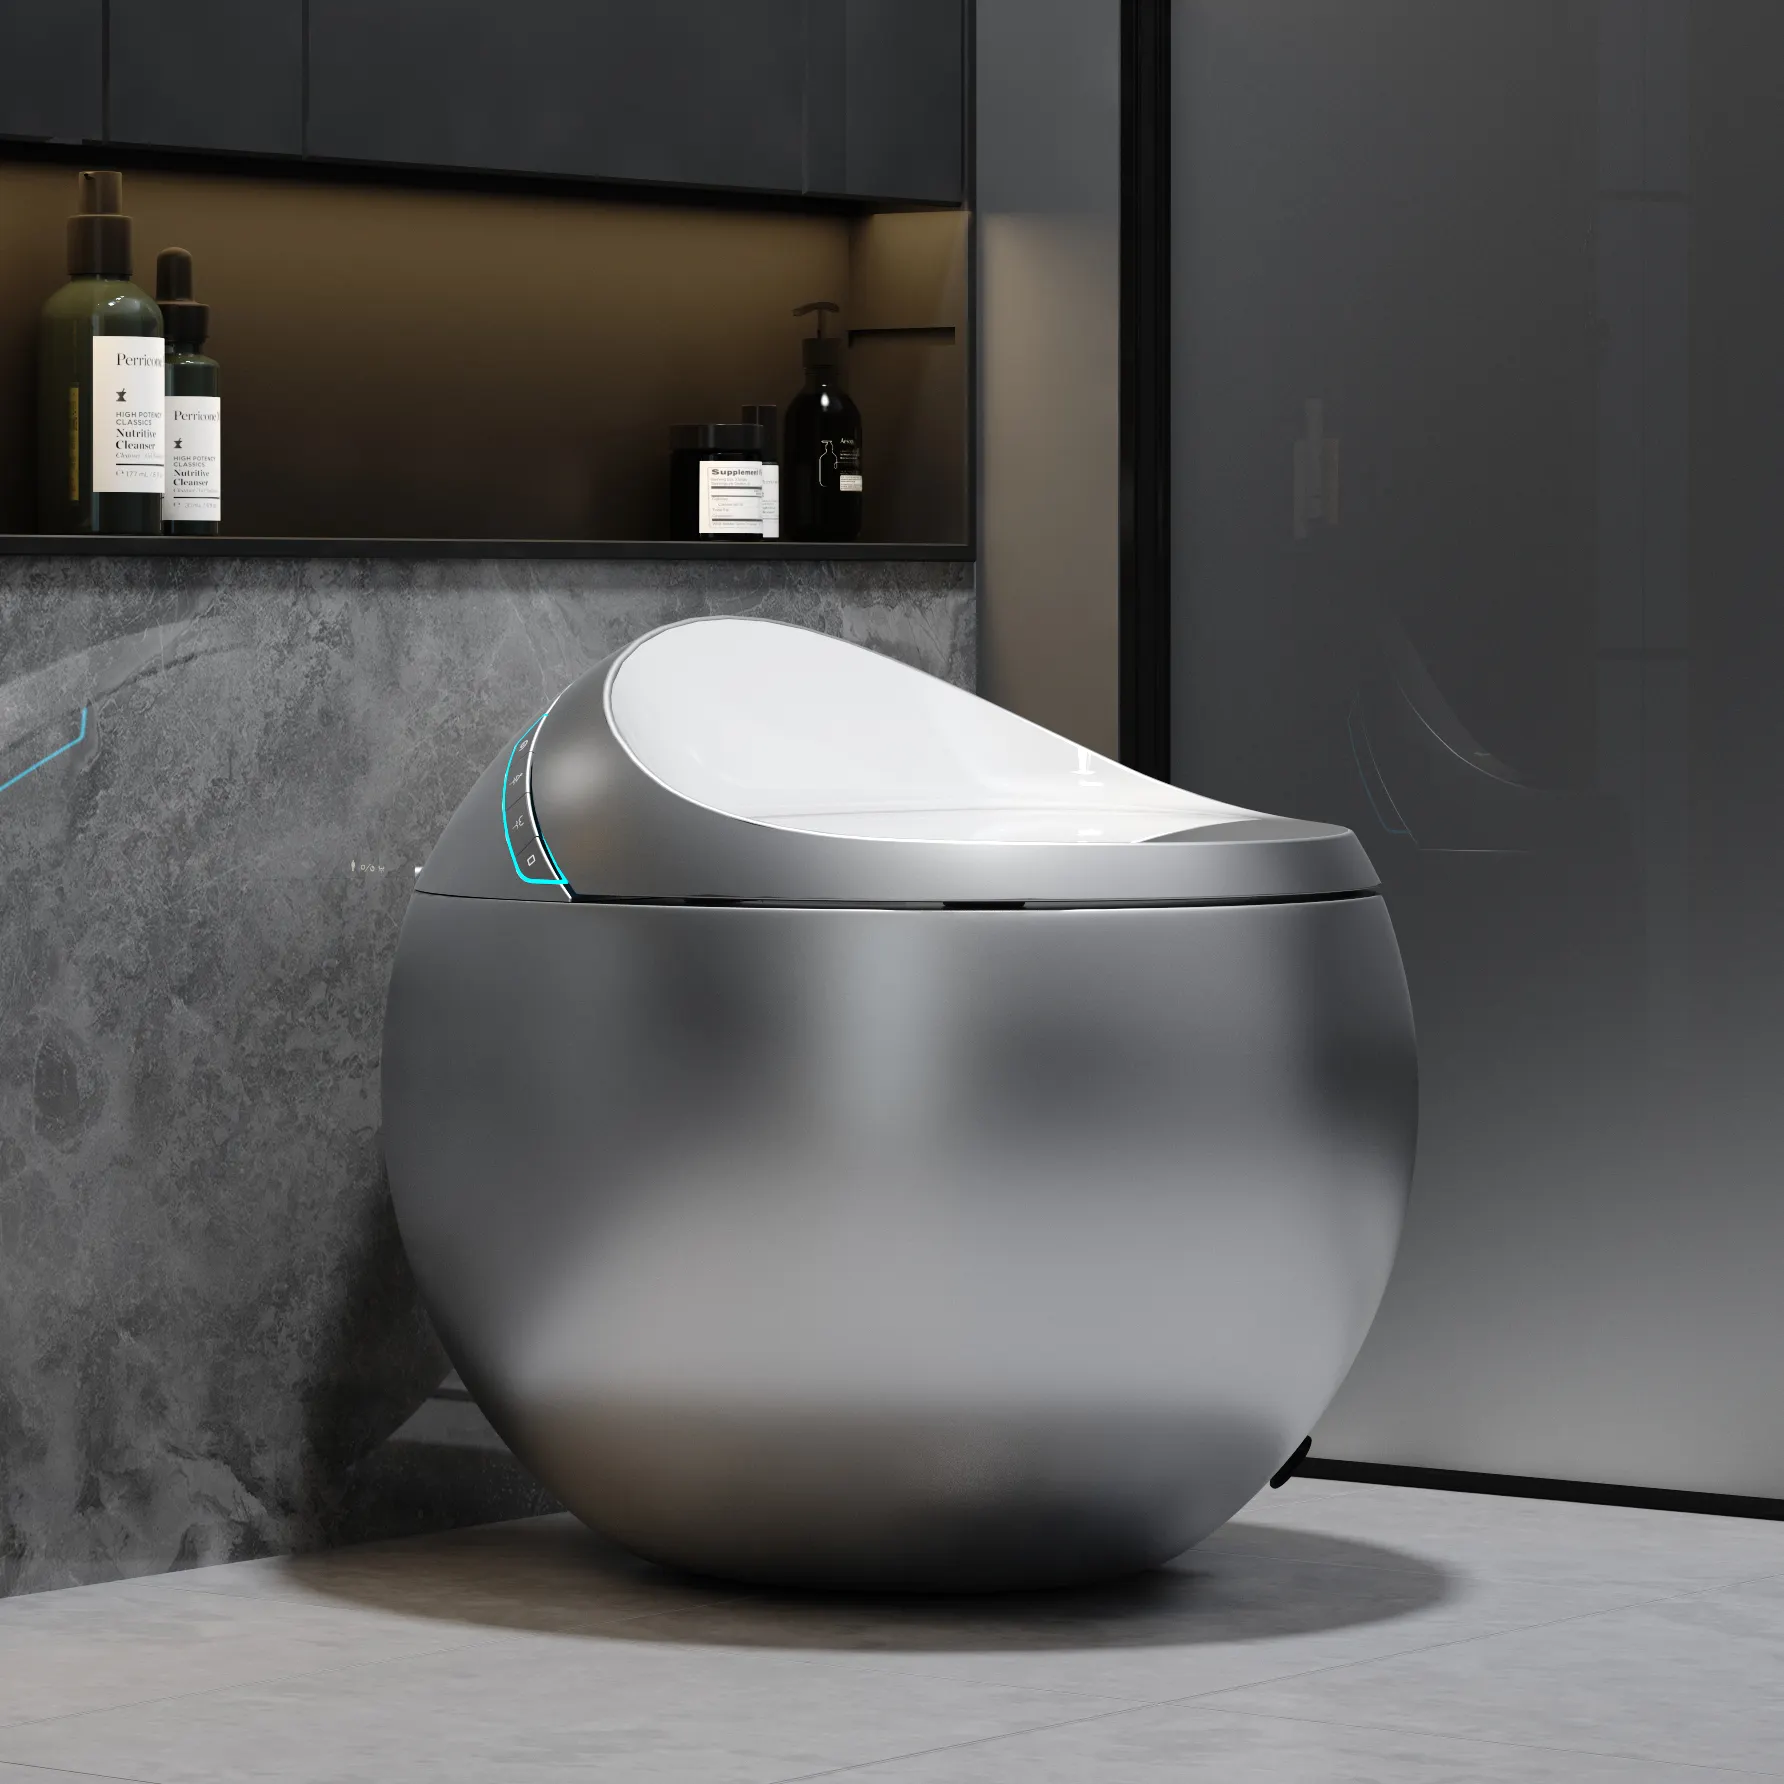 Neues Design Badezimmer Sanitär artikel Einteilige intelligente WC-Toiletten schüssel Eierform Automatische runde intelligente Toilette